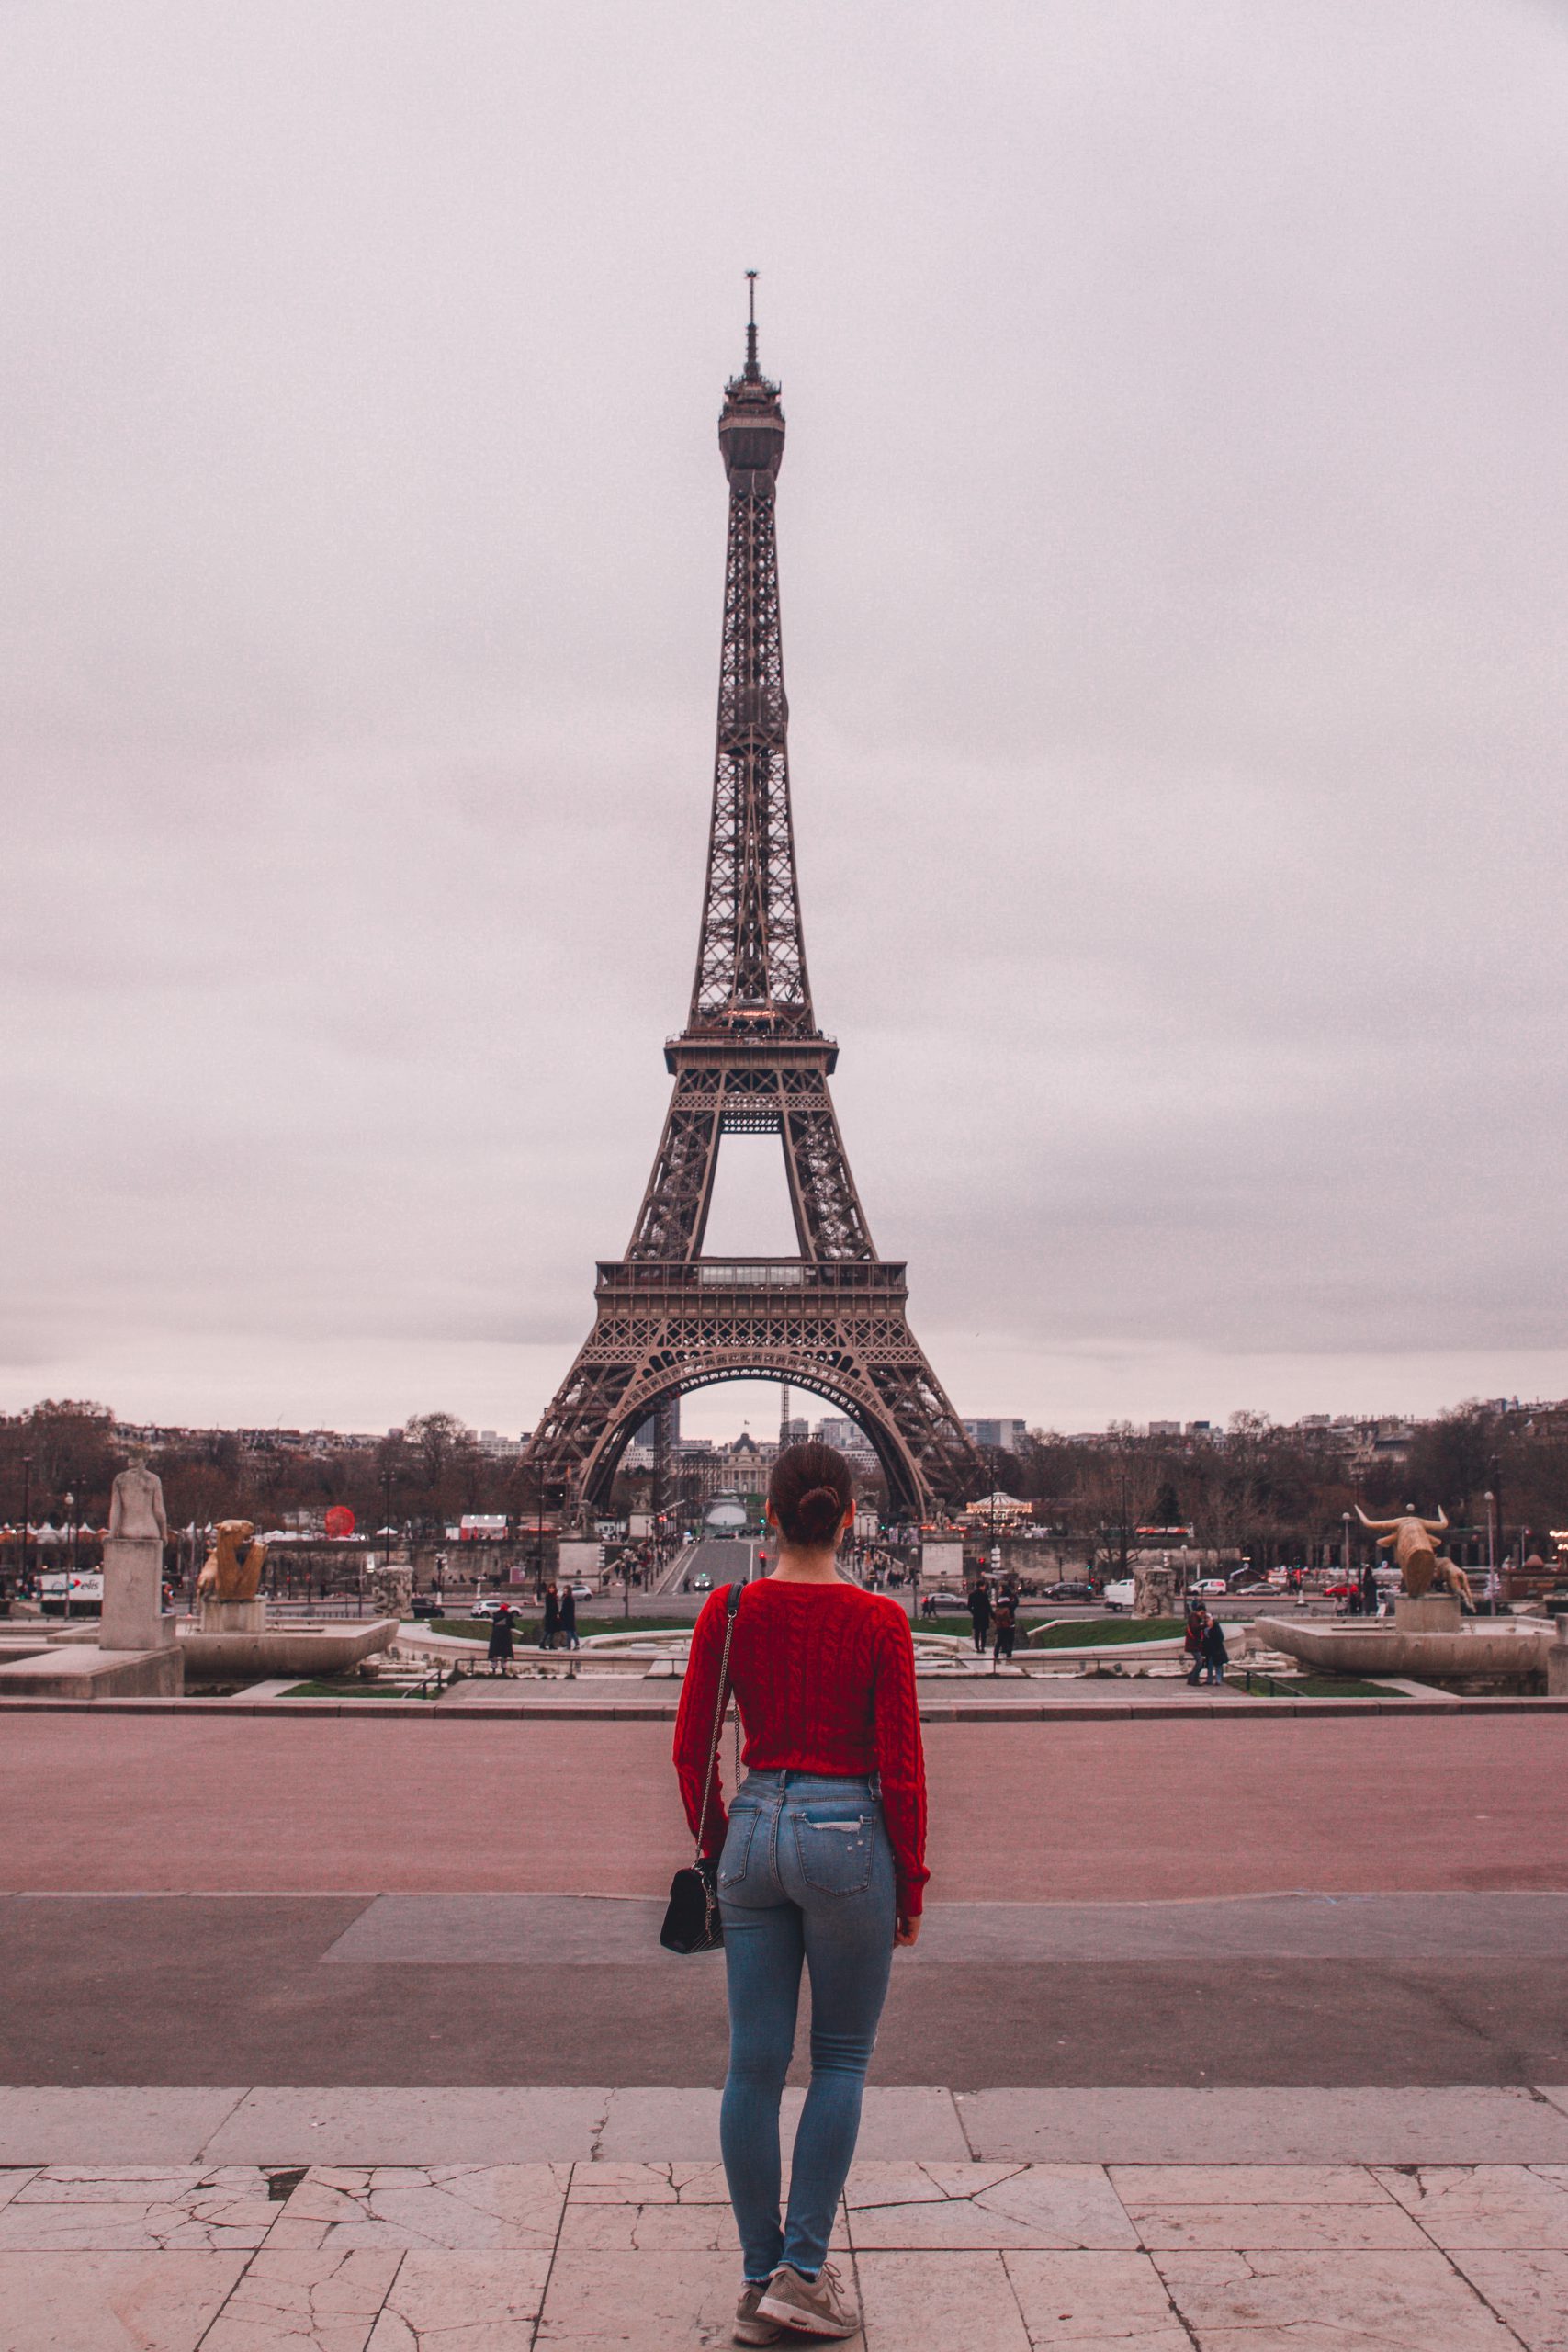 13 Secret Places to View the Eiffel Tower – Best Photo spots